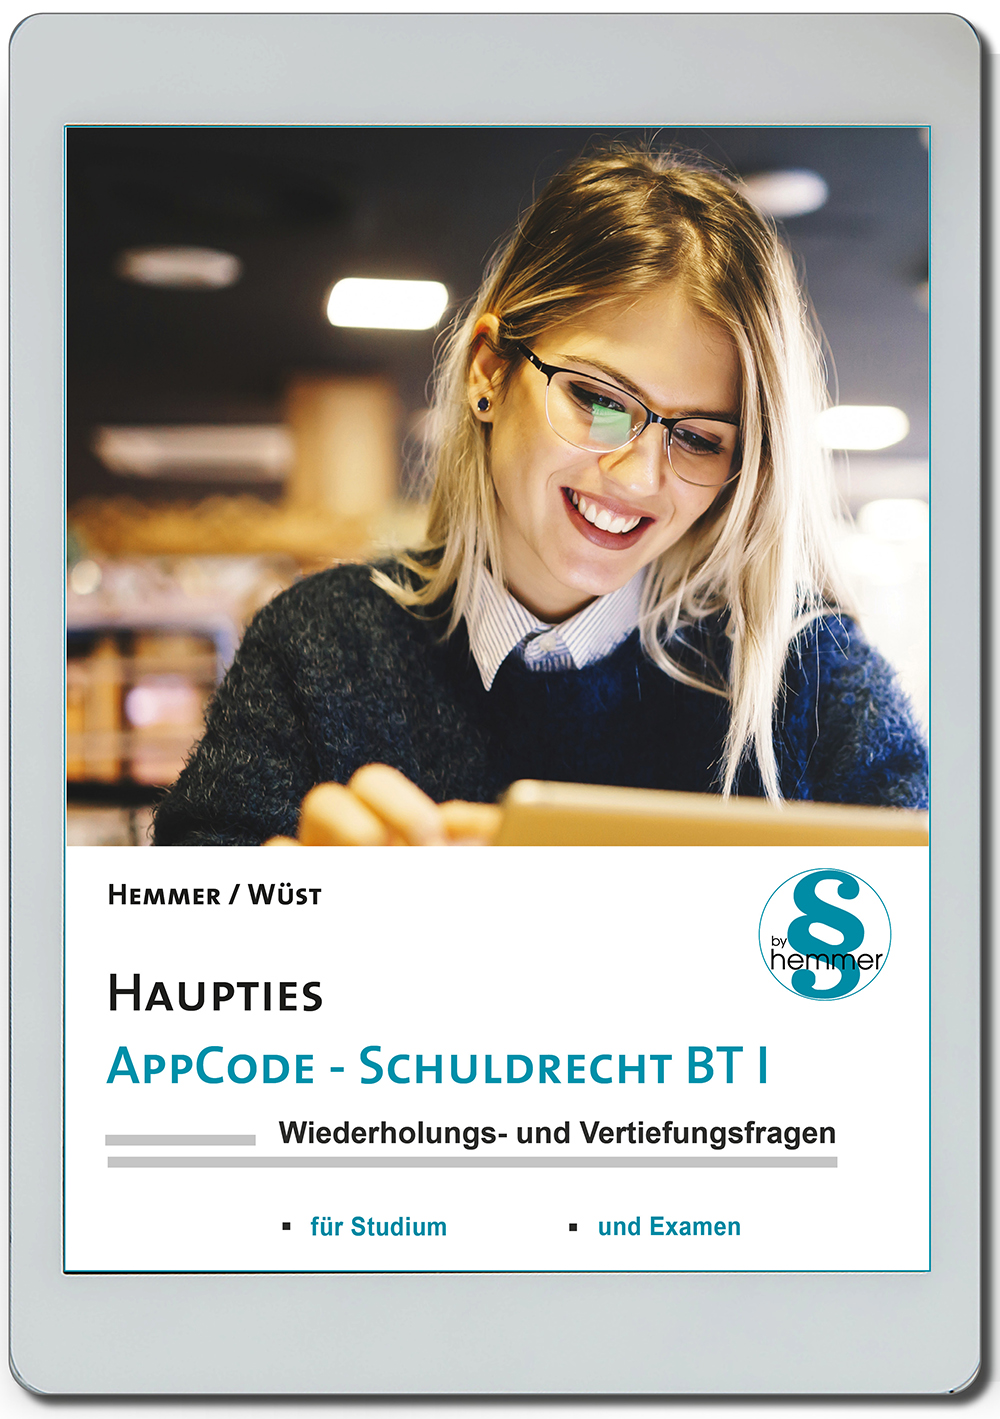 AppCode - haupties - Schuldrecht BT I